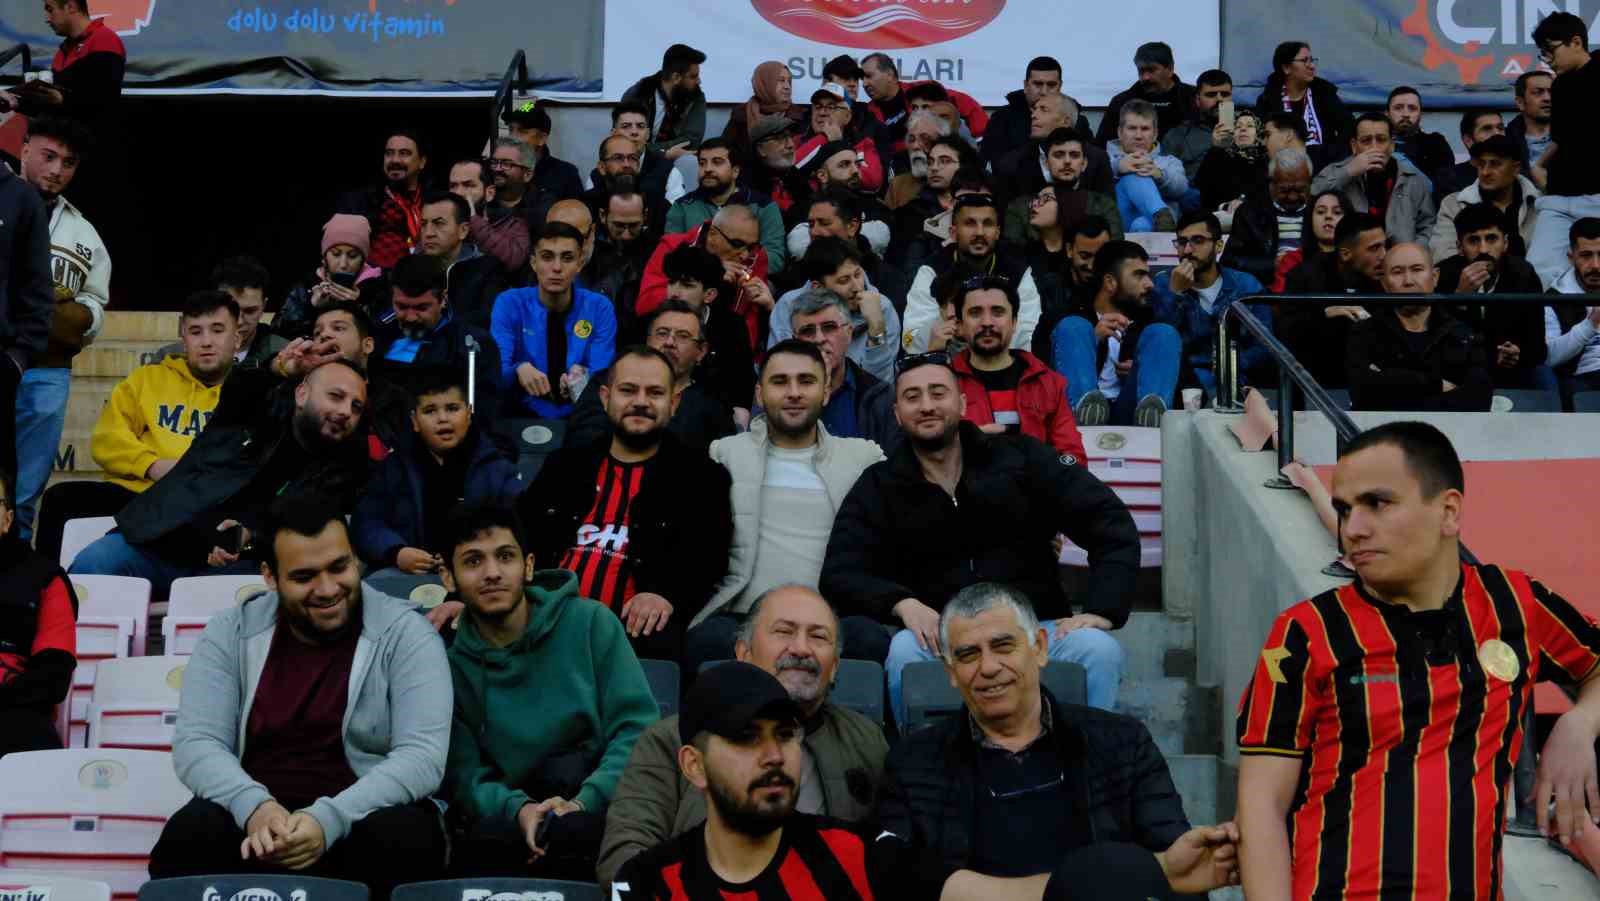 eskişehirspor taraftarı anadolu üniversitesi spor kulübü’nü yalnız bırakmadı